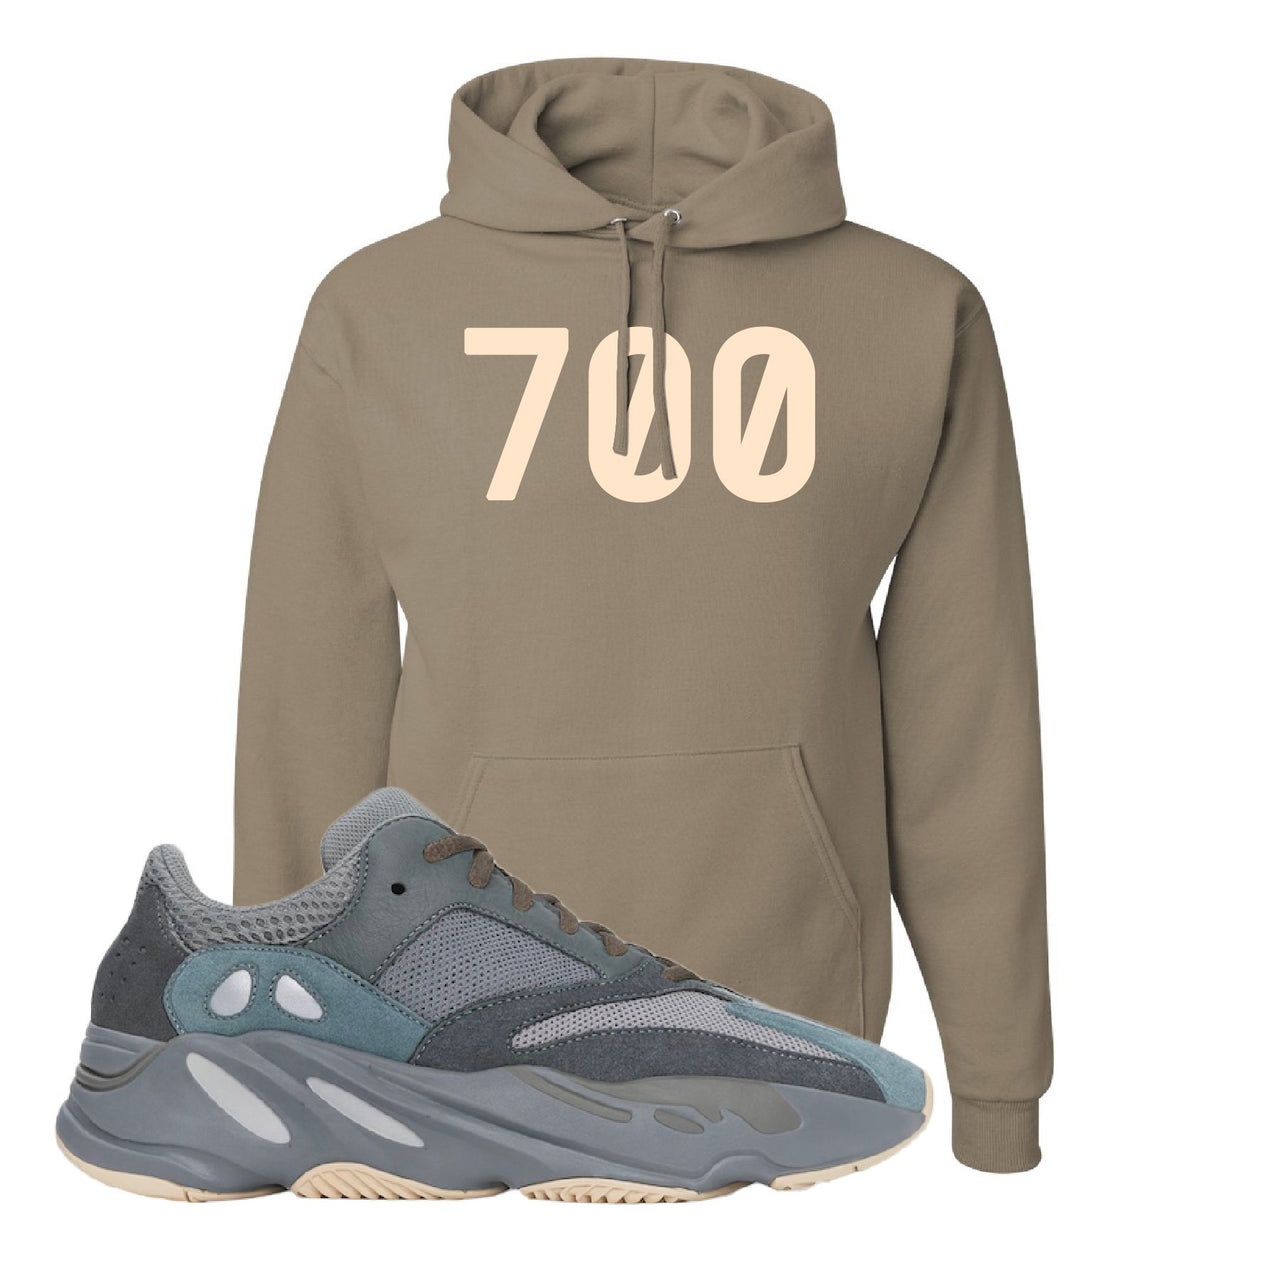 Yeezy Boost 700 Teal Blue 700 Khaki Sneaker Hook Up Pullover Hoodie